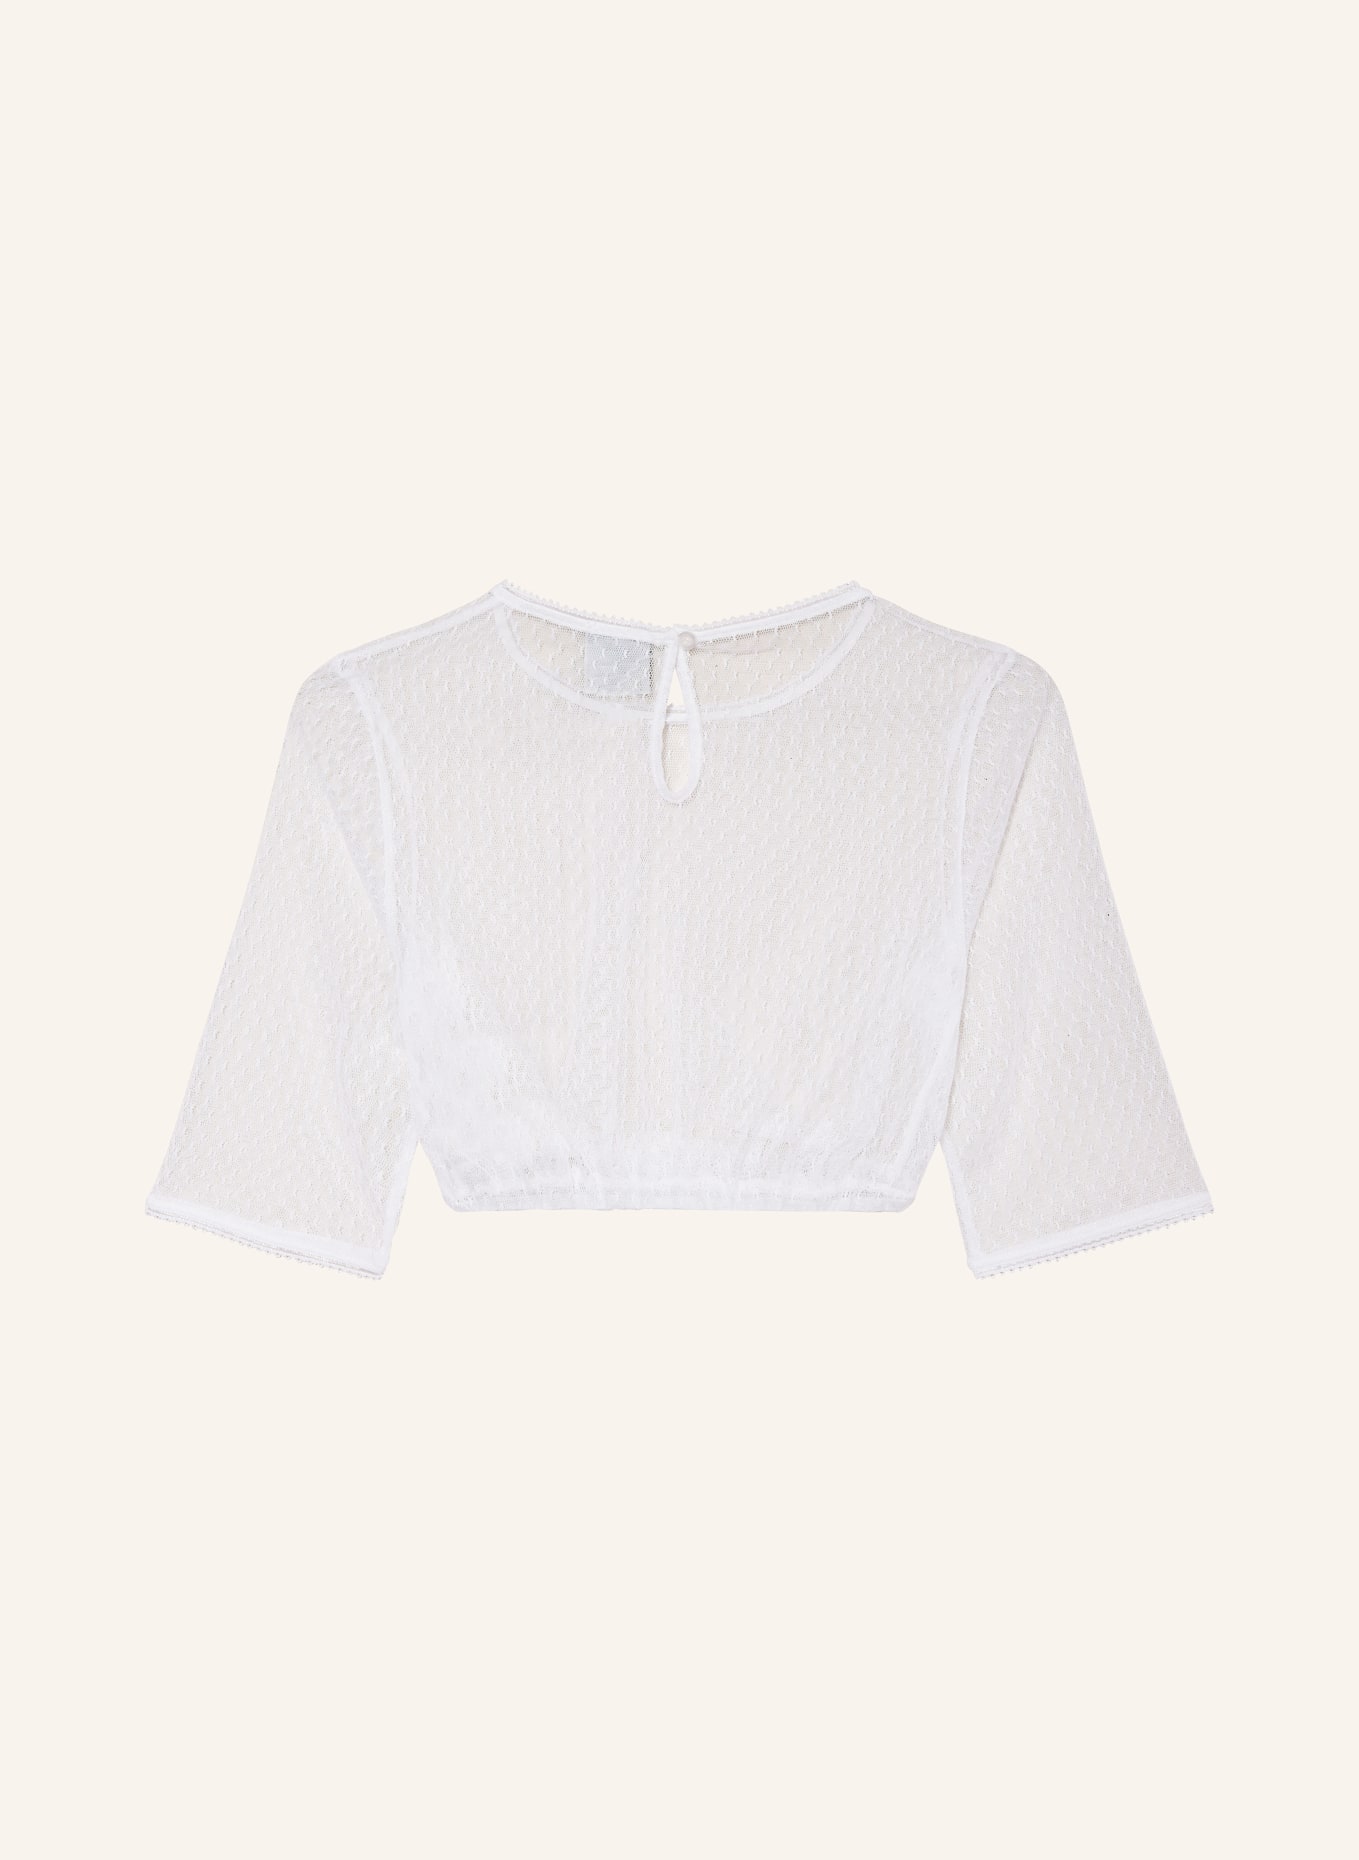 Hammerschmid Dirndl blouse CLARISSA, Color: WHITE (Image 2)